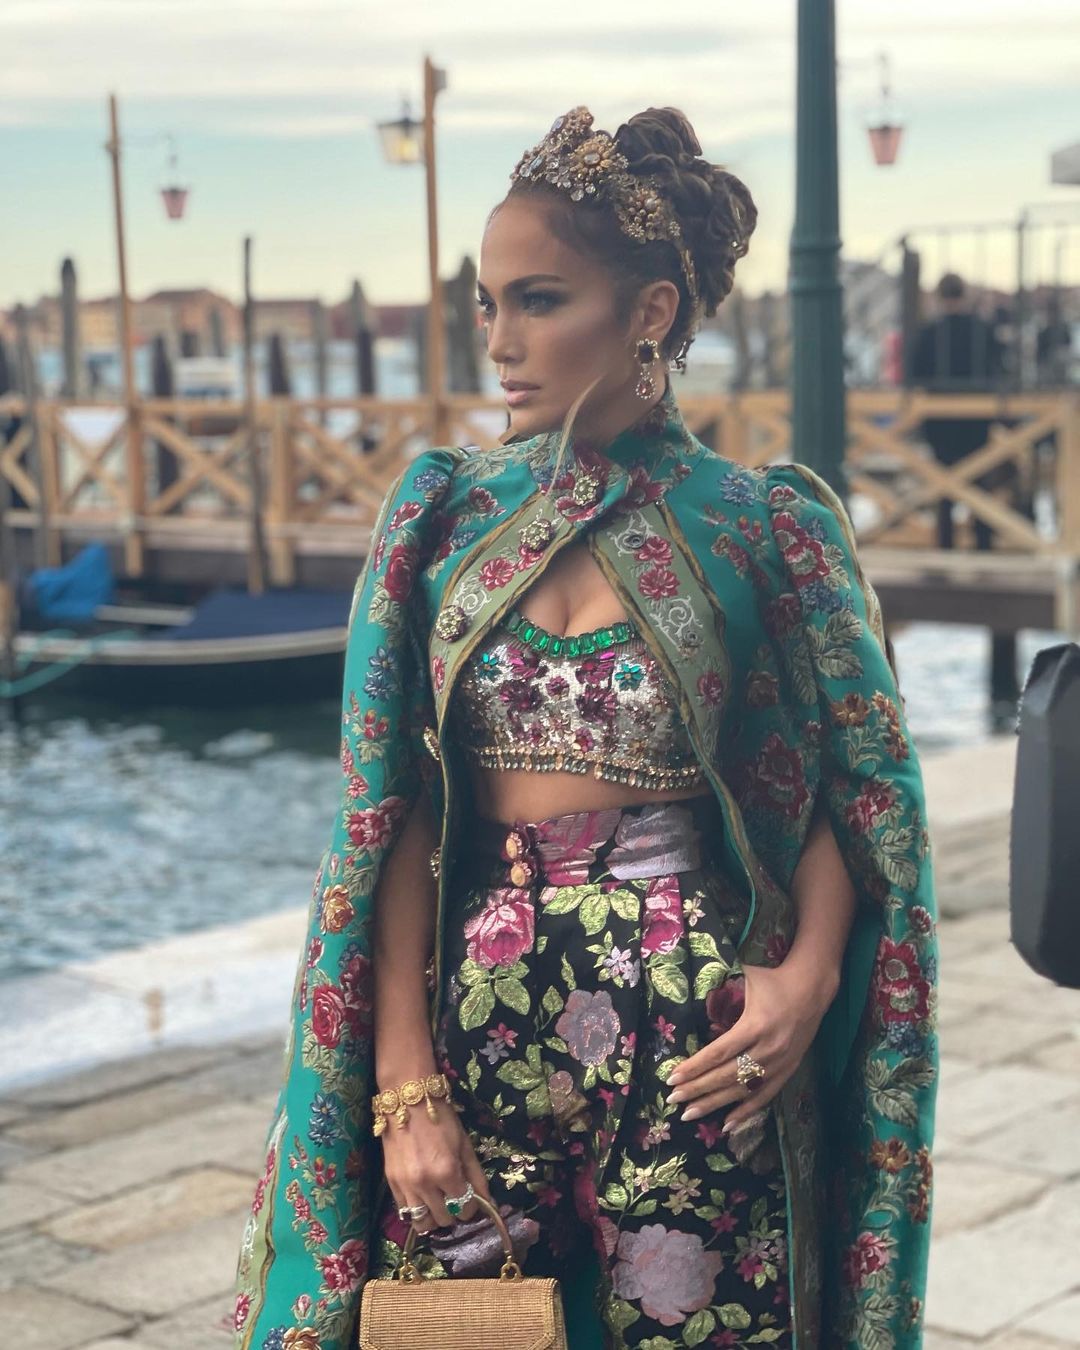 Đỉnh như Jennifer Lopez, thay đổi thiết kế trở nên đơn giản, ít rườm rà hơn nhưng hoàn toàn vẫn có thể show hết những đường cong cơ thể mà không mất đi sự 'uy quyền' của bộ outfit. Những phụ kiện đi kèm một cách tinh tế và sang trọng khiến Jennifer không khác gì một bà hoàng tại nước Ý. 